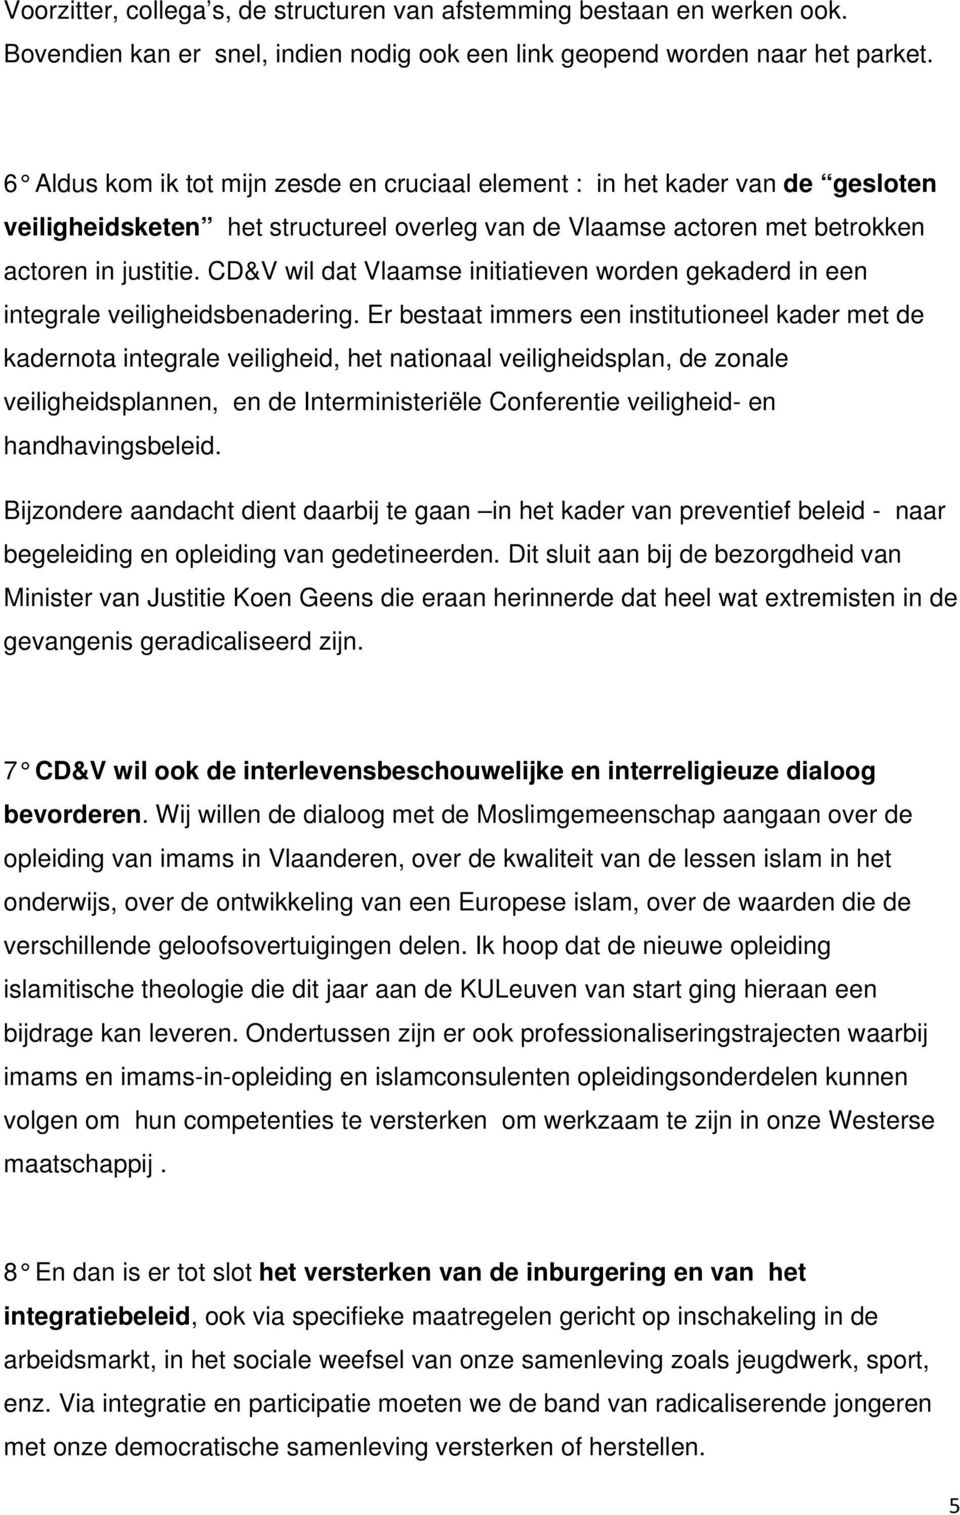 CD&V wil dat Vlaamse initiatieven worden gekaderd in een integrale veiligheidsbenadering.